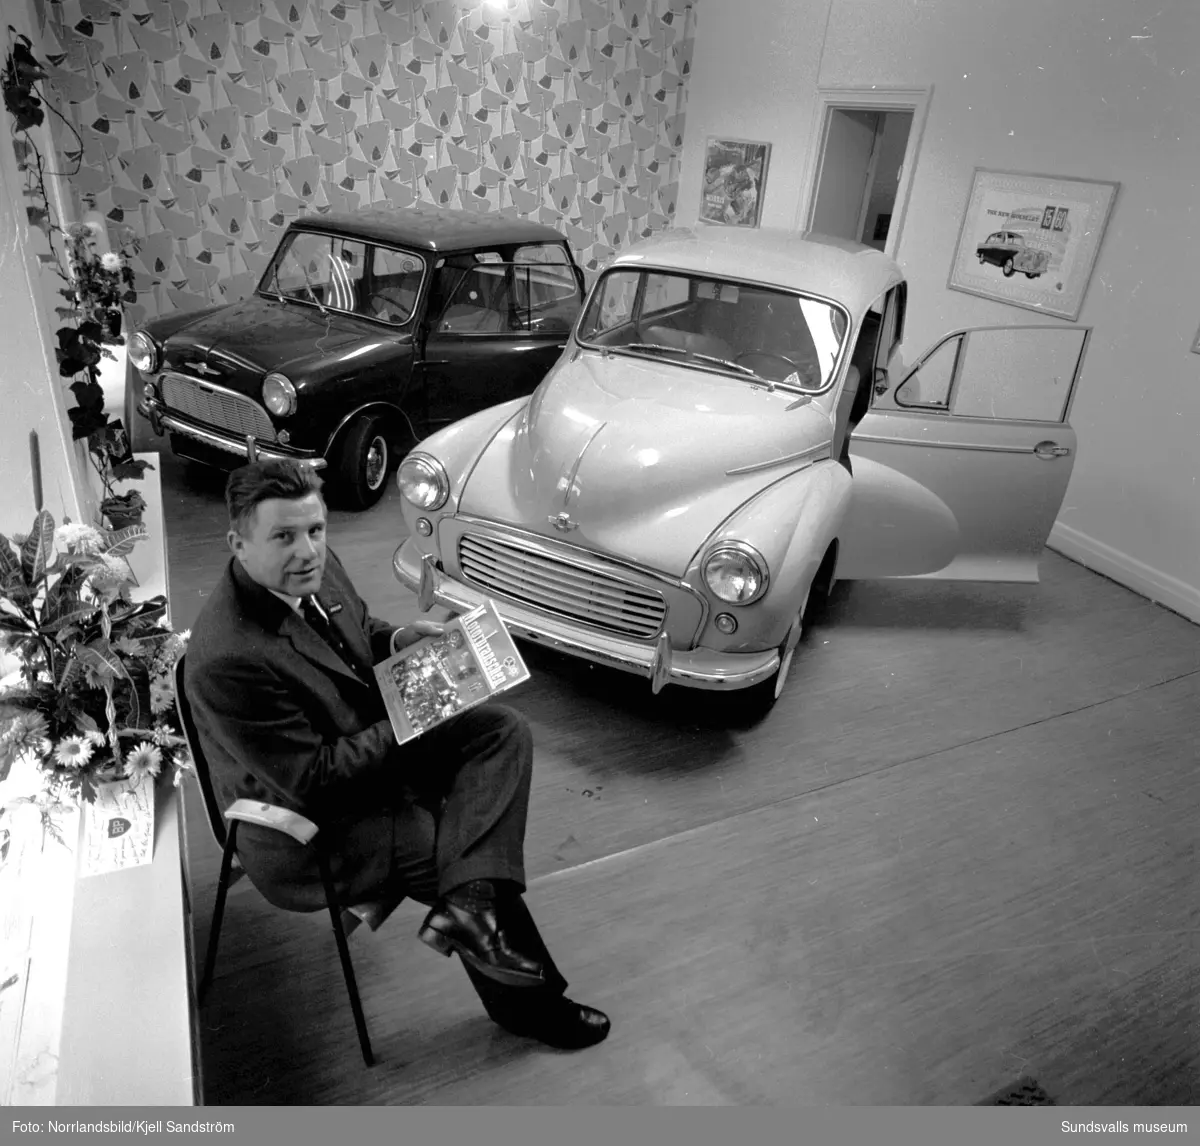 Tage Winblad & C:o bilfirma, som säljer bilmärket Morris, öppnar i nya lokaler på Trädgårdsgatan 17. Två bilar får plats i den lilla utställningshallen.